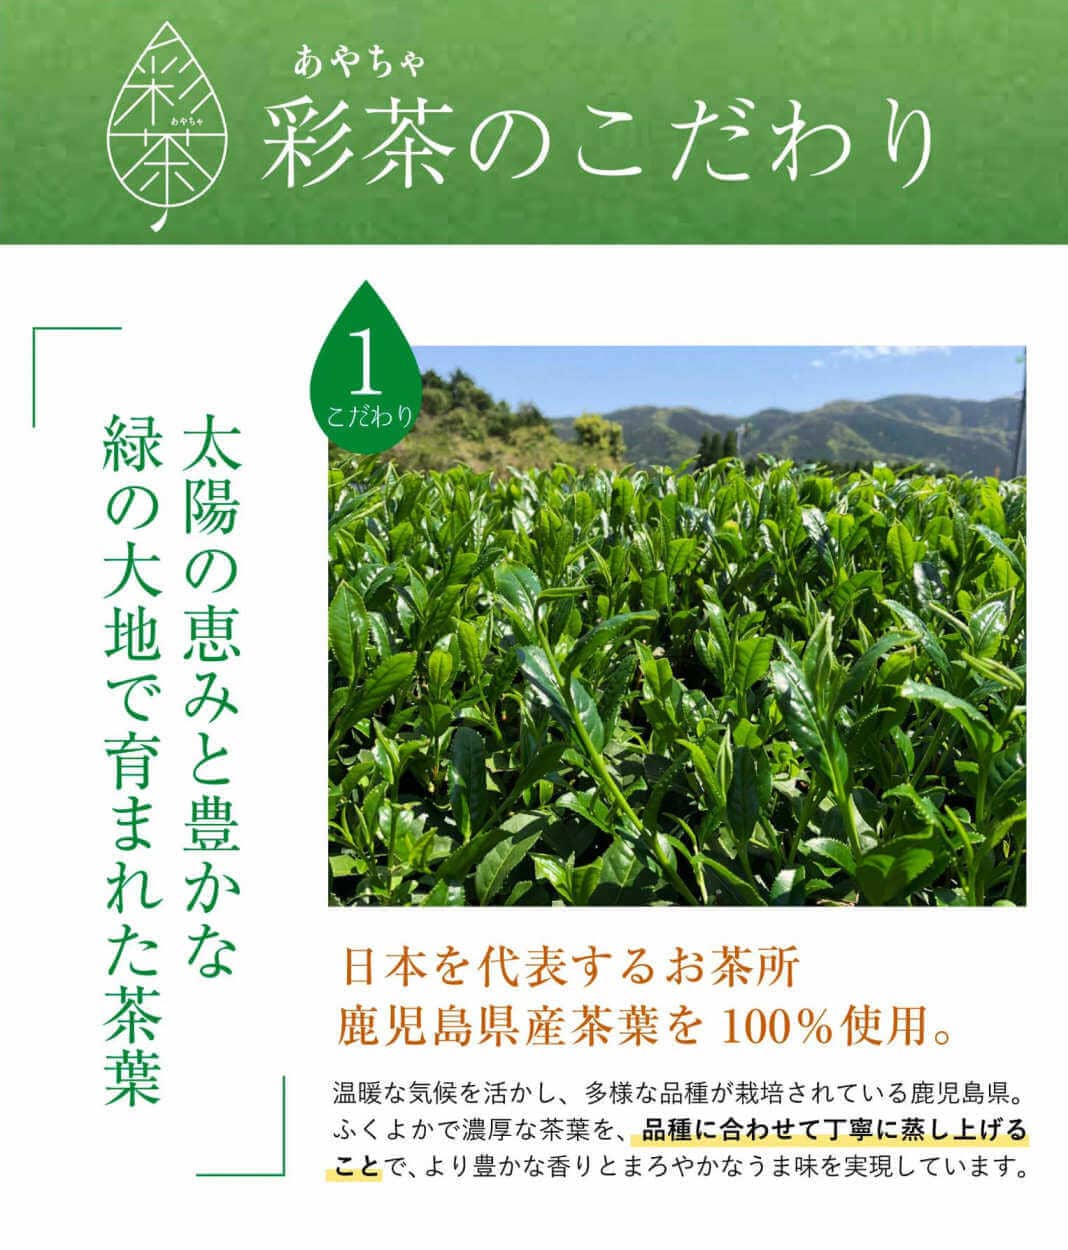 緑茶 彩茶のこだわり①「太陽の恵みと豊かな緑の大地で育まれた茶葉」日本を代表するお茶所 鹿児島県産茶葉を 100% 使用。温暖な気候を活かし、多様な品種が栽培されている鹿児島県。ふくよかで濃厚な茶葉を、品種に合わせて丁寧に蒸し上げることで、より豊かな香りとまろやかなうま味を実現しています。